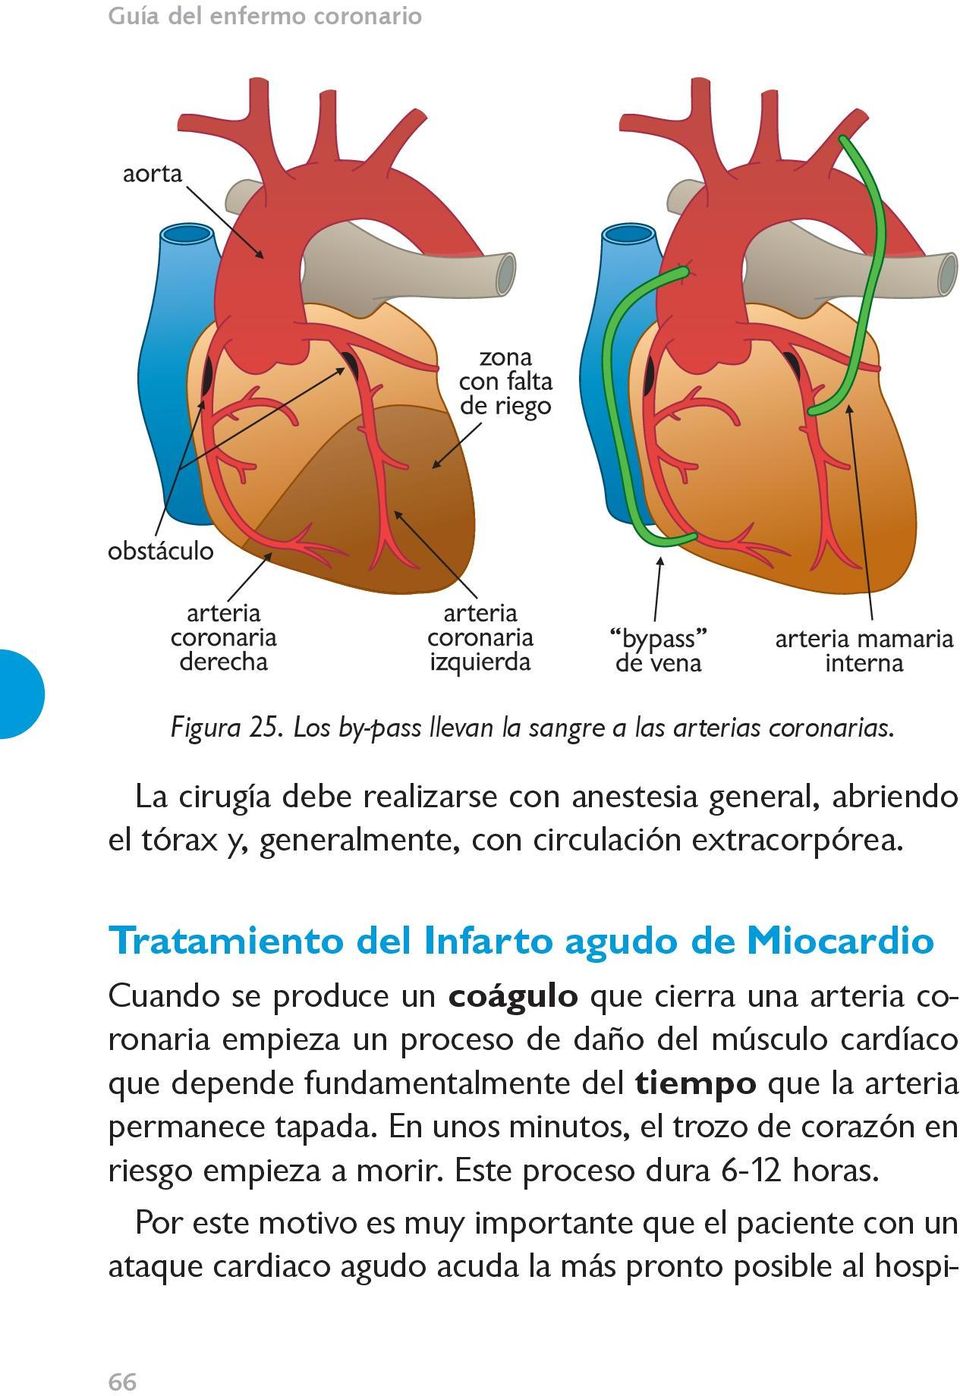 Tratamiento del Infarto agudo de Miocardio Cuando se produce un coágulo que cierra una arteria coronaria empieza un proceso de daño del músculo cardíaco que